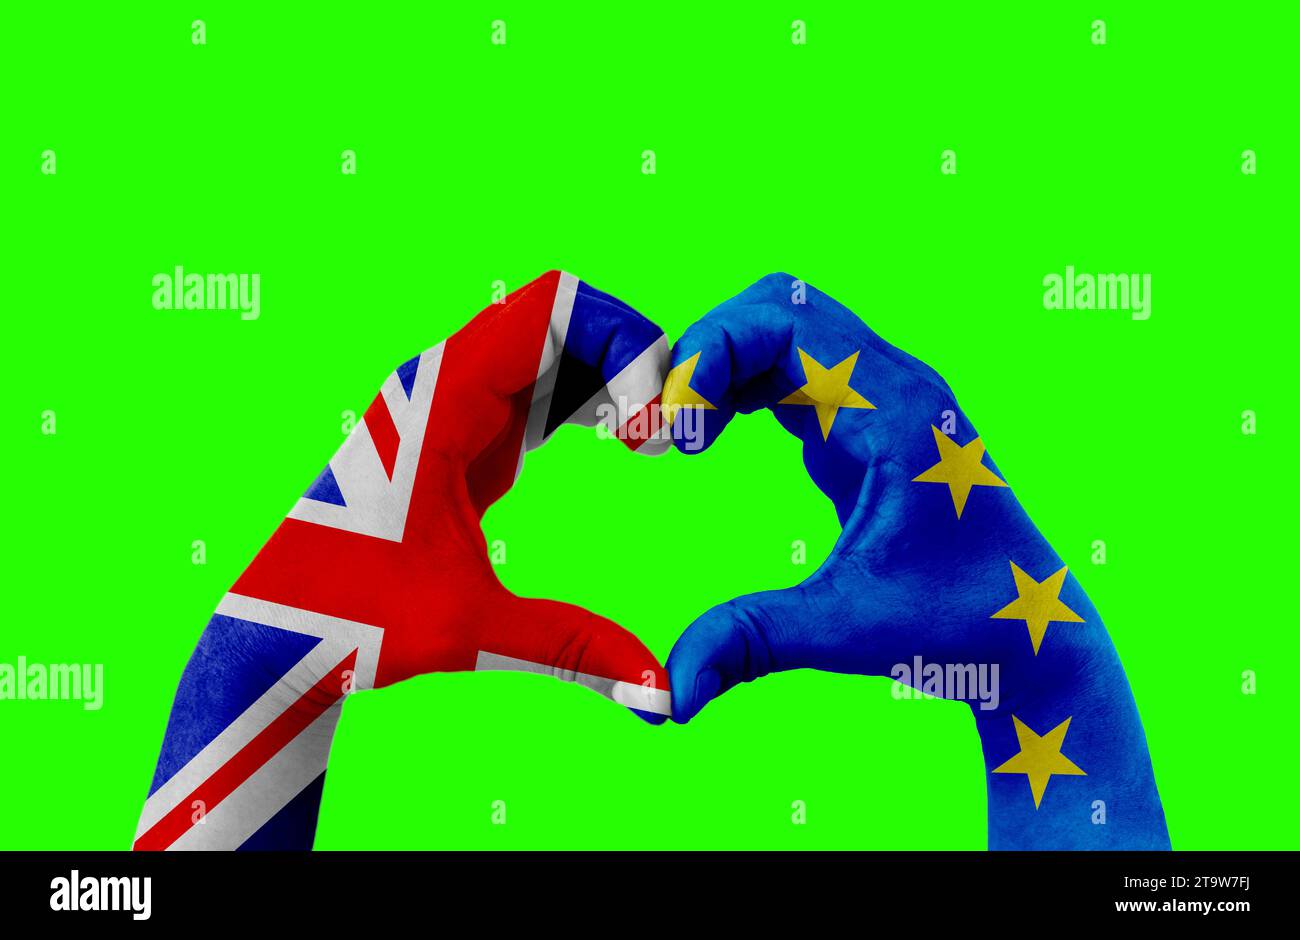 brexit, les mains de l'homme en forme de coeur modelé avec le drapeau de l'Union européenne bleue et le drapeau de la grande-bretagne royaume-uni sur fond d'écran vert chroma key, vote référendum pour le concept de sortie du royaume-uni Banque D'Images